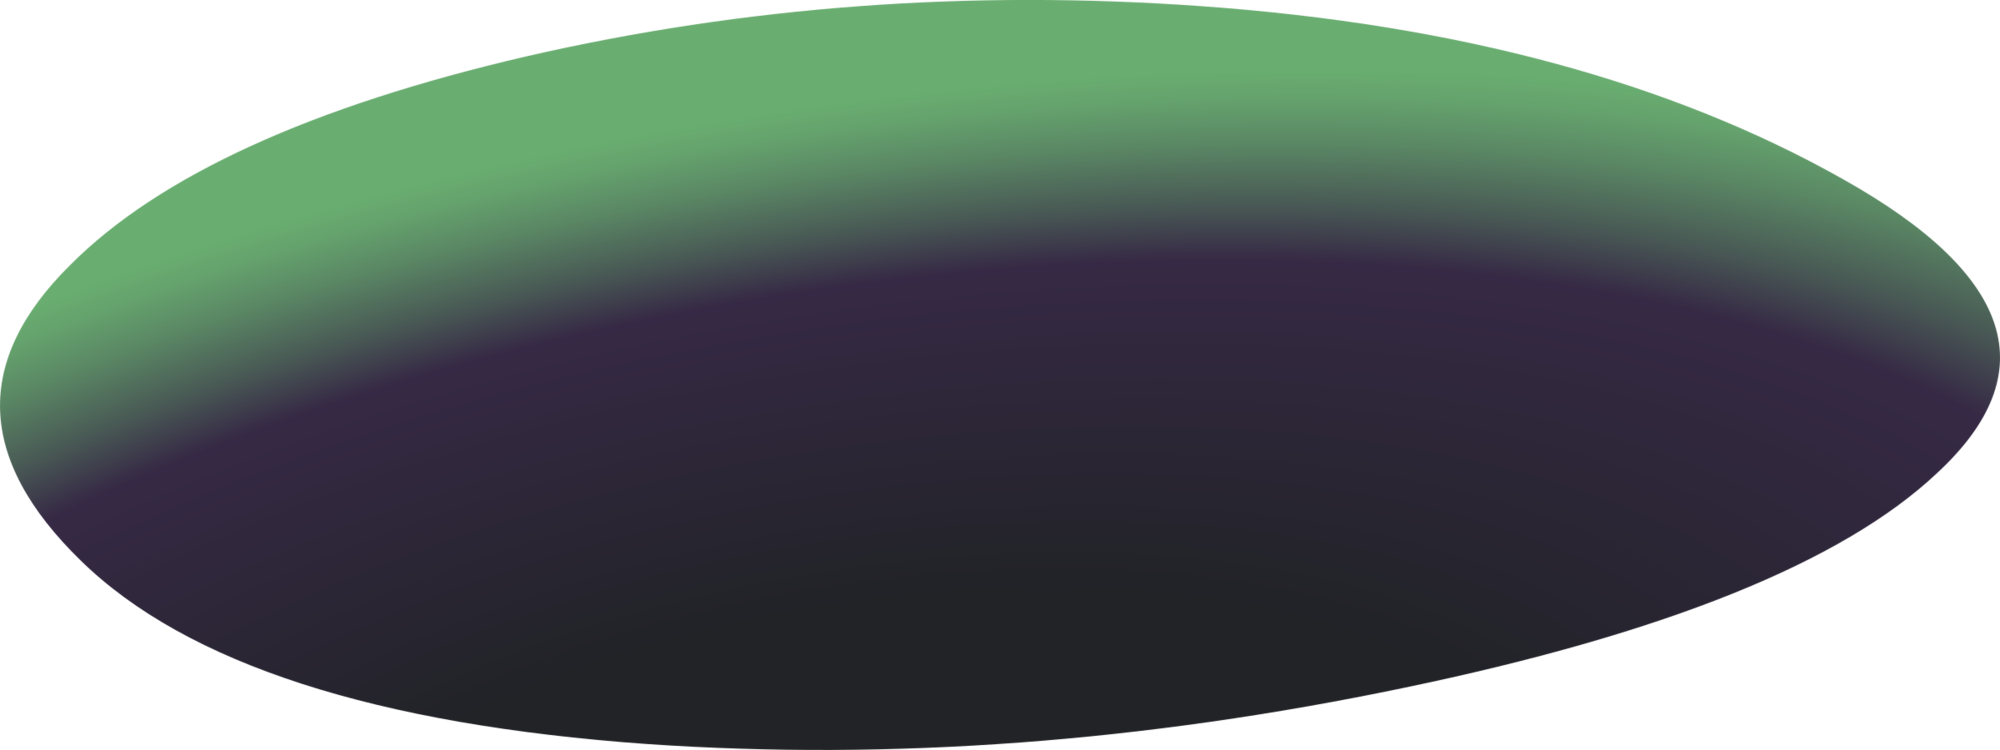 Purple,Oval,Green